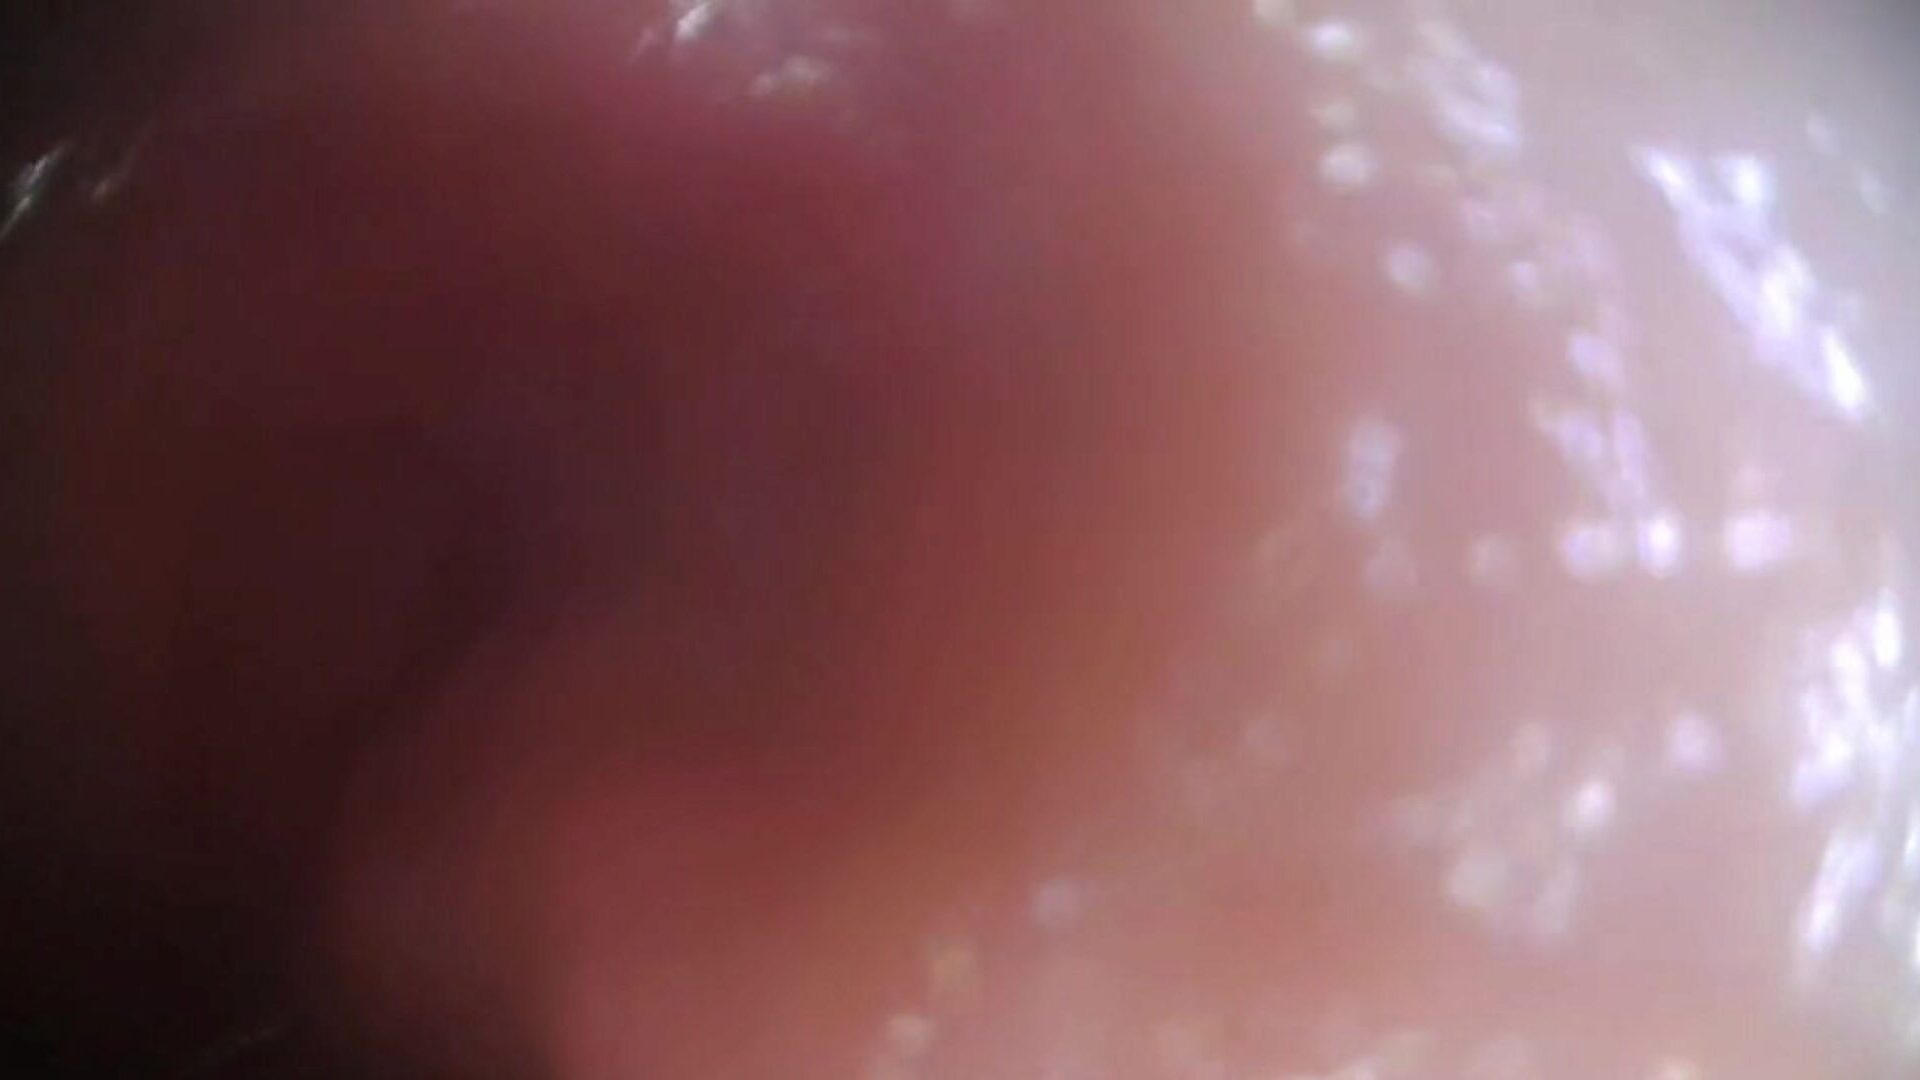 stvarna sperma - maca prema unutra - originalni cjeloviti video